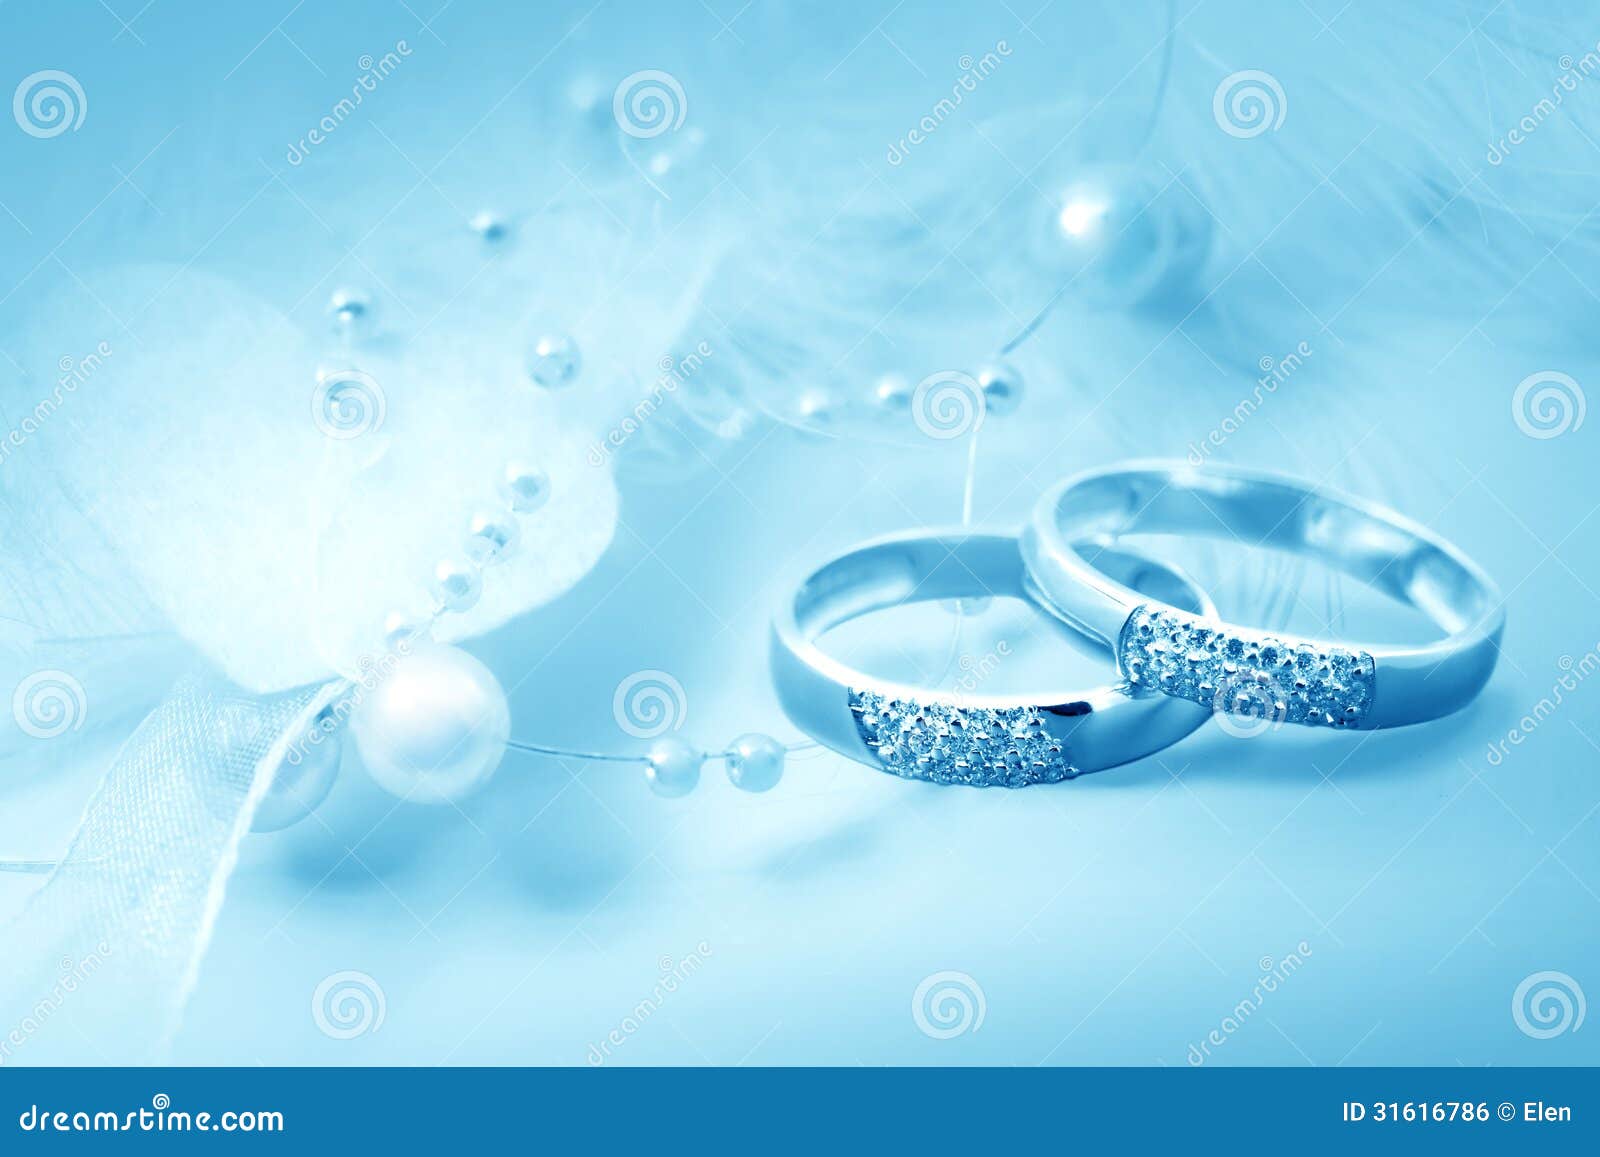 Chỉ cần một cái nhìn duy nhất vào những chiếc nhẫn cưới này cũng đủ để bạn cảm nhận được tình yêu và sự khắc khoải của một cặp đôi. Các chi tiết nhỏ trên nhẫn sẽ khiến bạn say đắm và muốn khám phá thêm về câu chuyện tình yêu của họ.